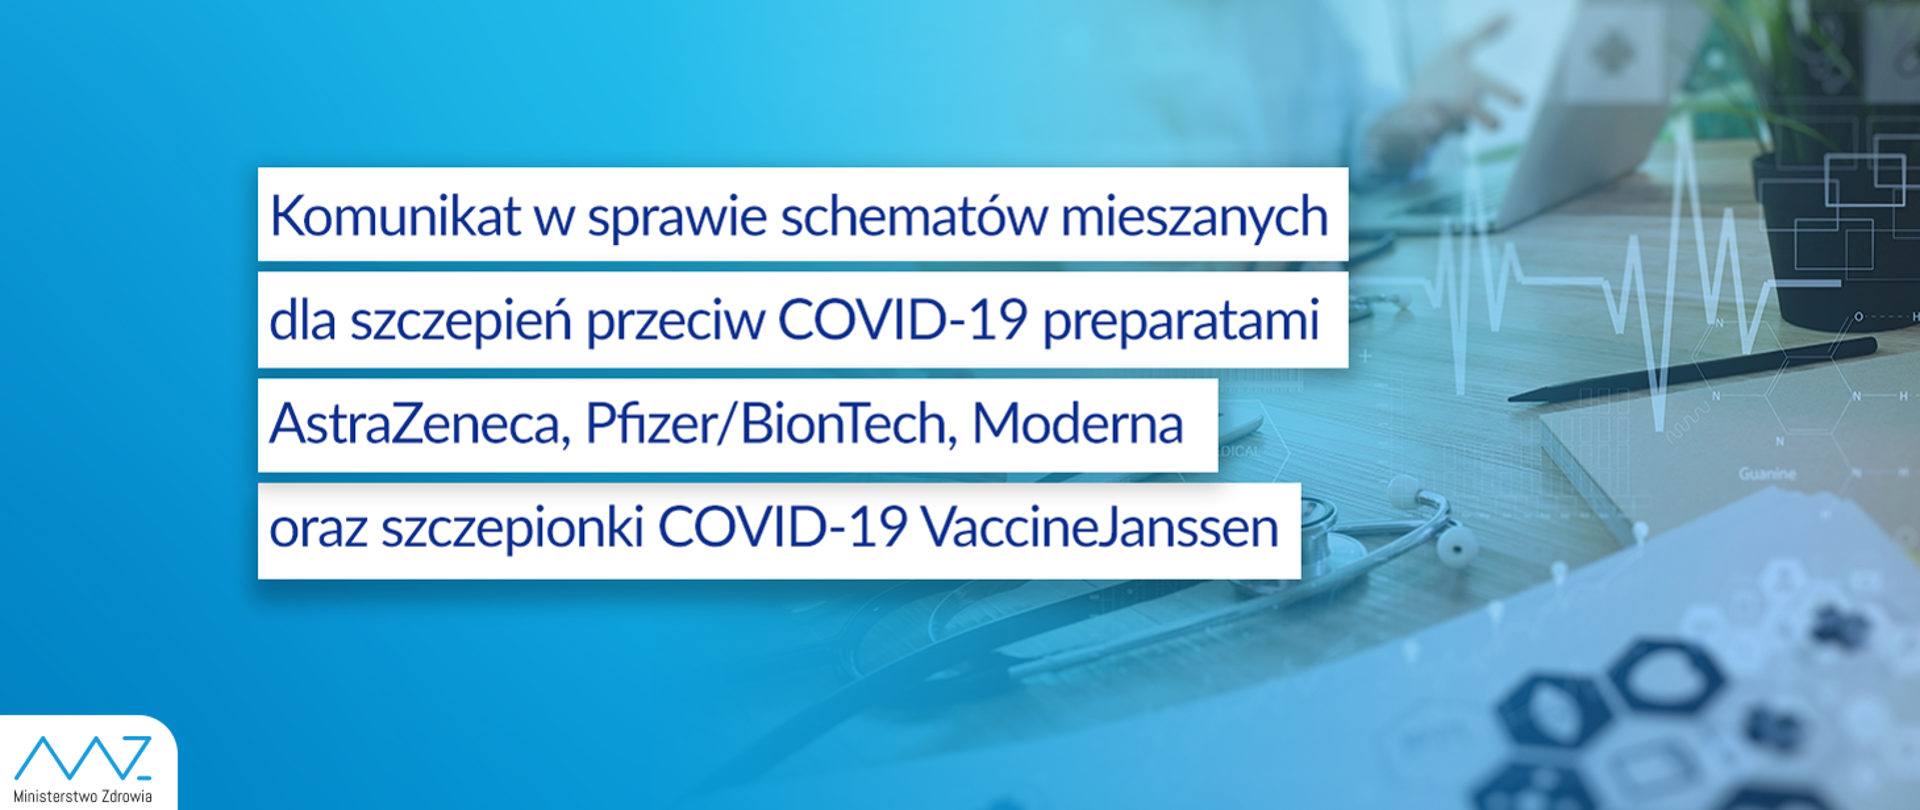 Komunikat w sprawie schematów mieszanych dla szczepień przeciw COVID-19